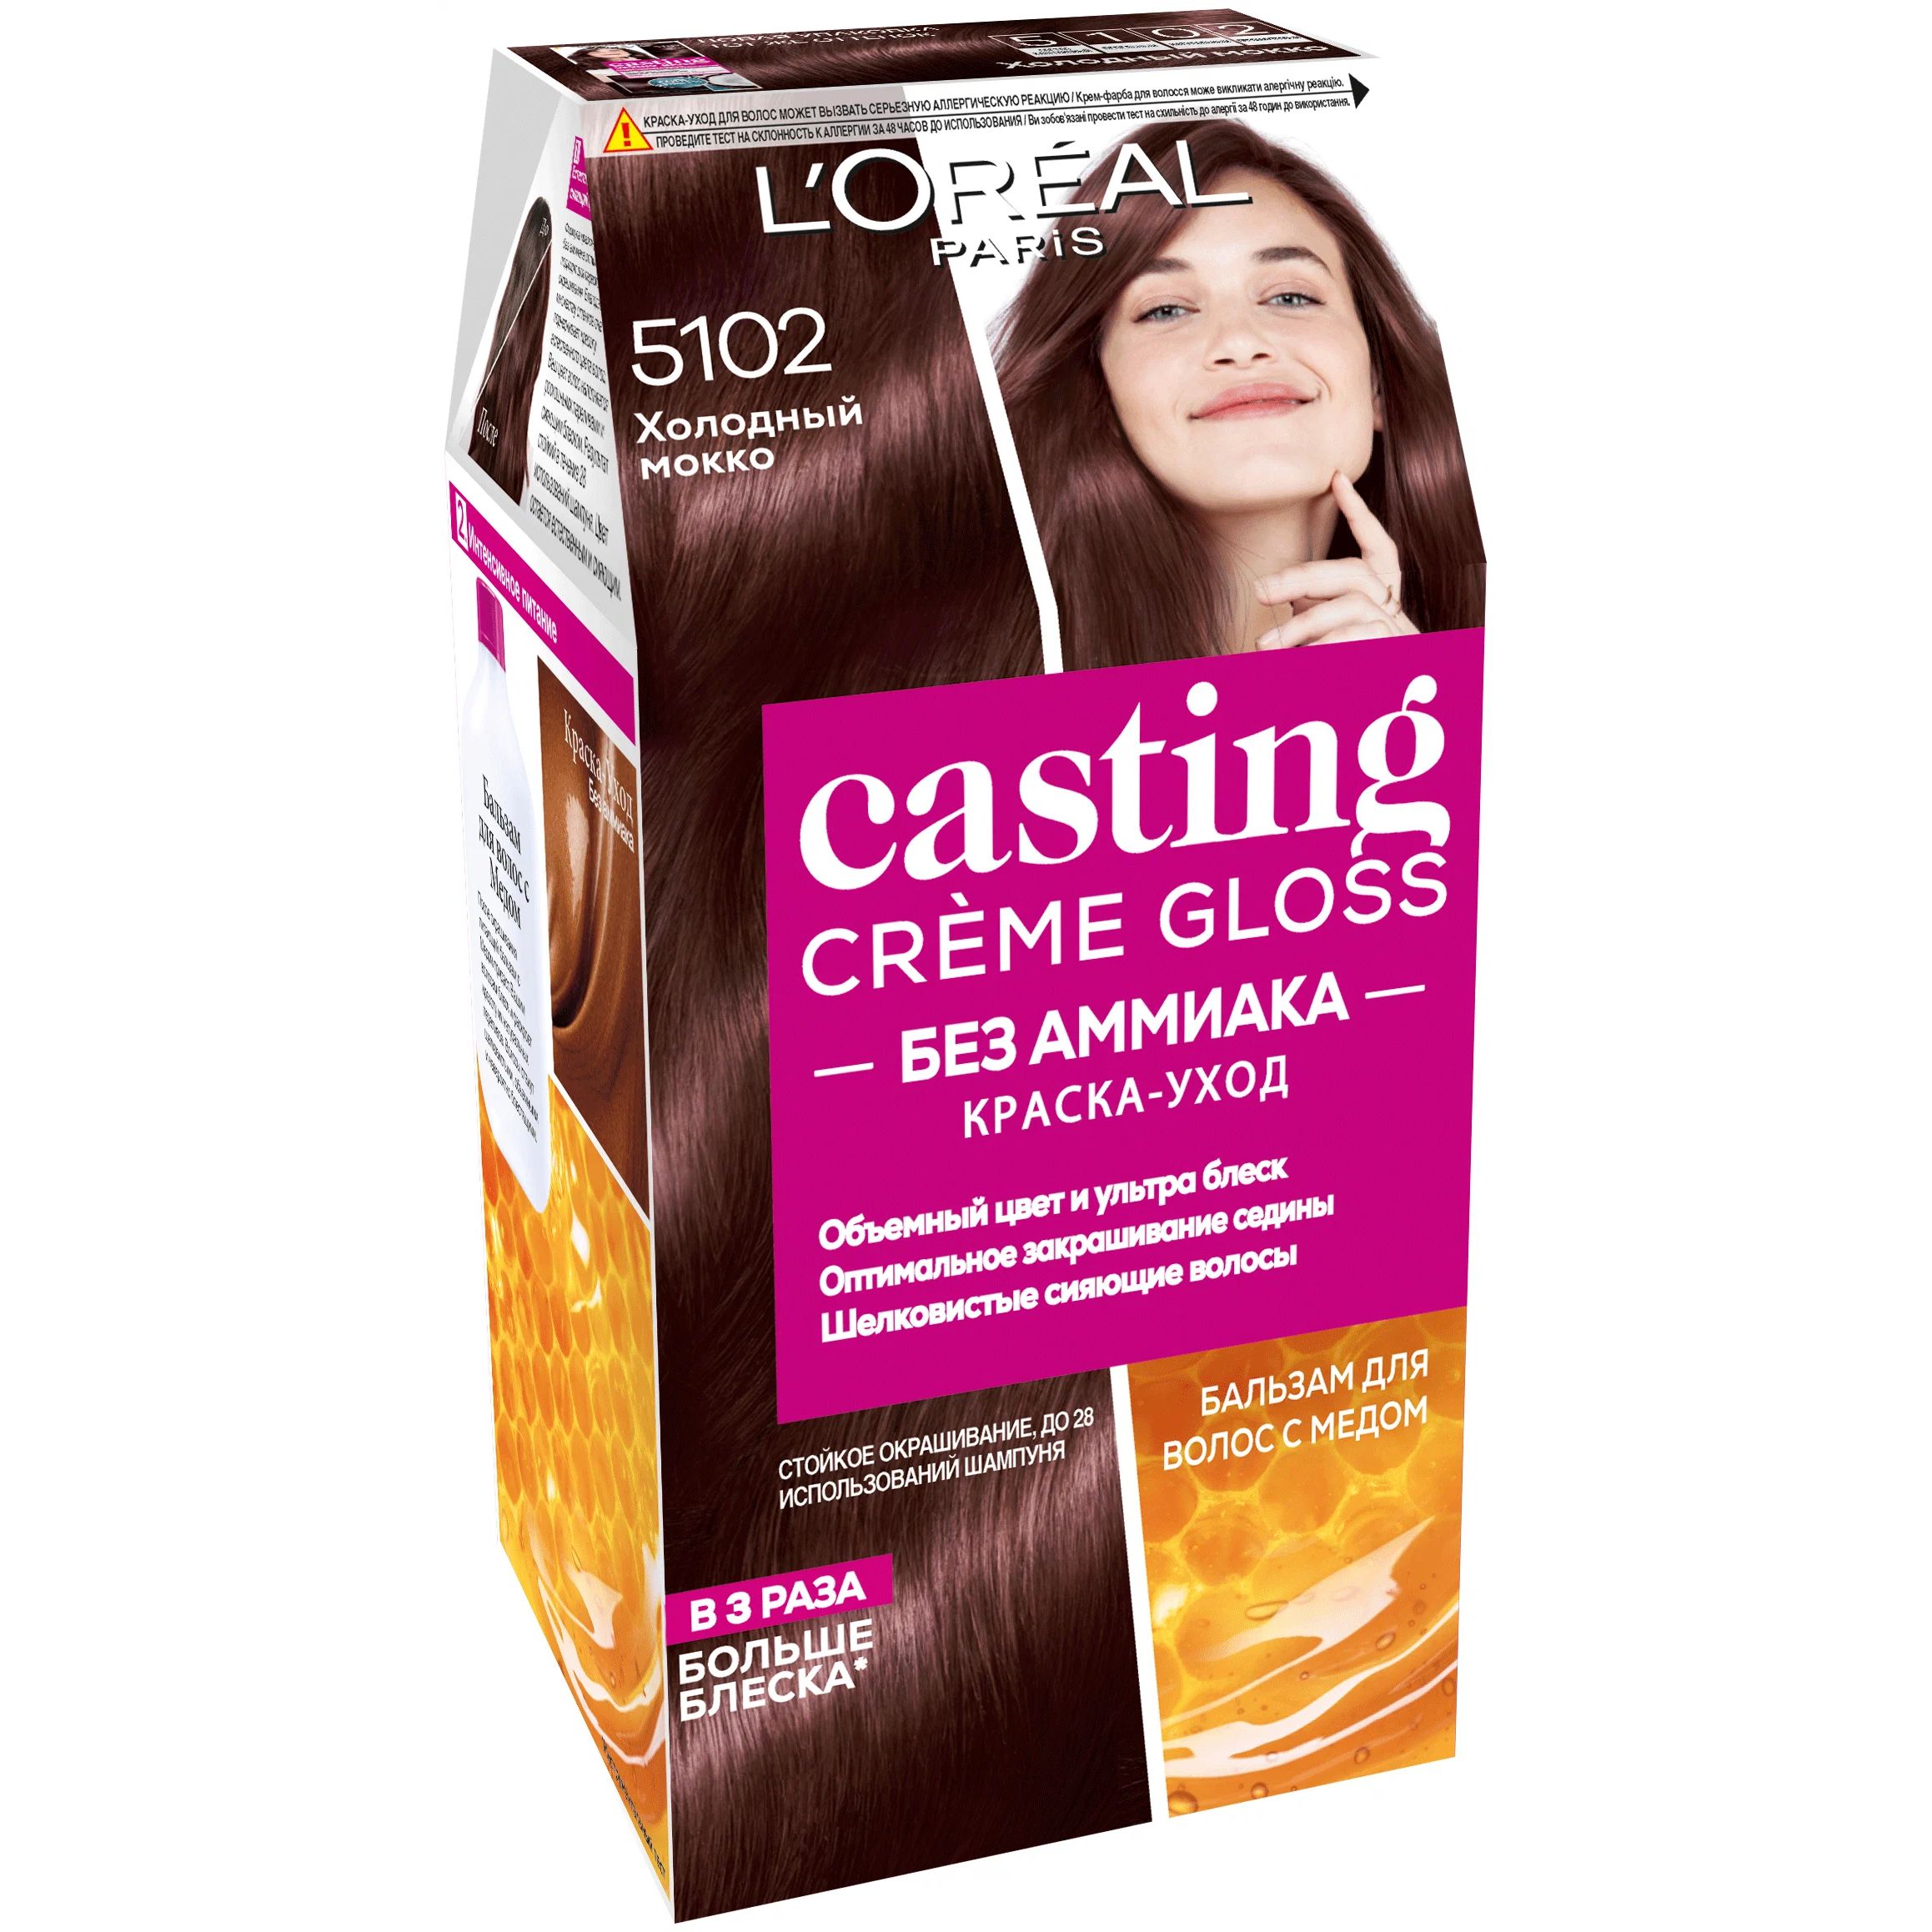 Краска-уход для волос L'Oreal Paris Casting Creme Gloss, 5102 холодный мокко, 180 мл